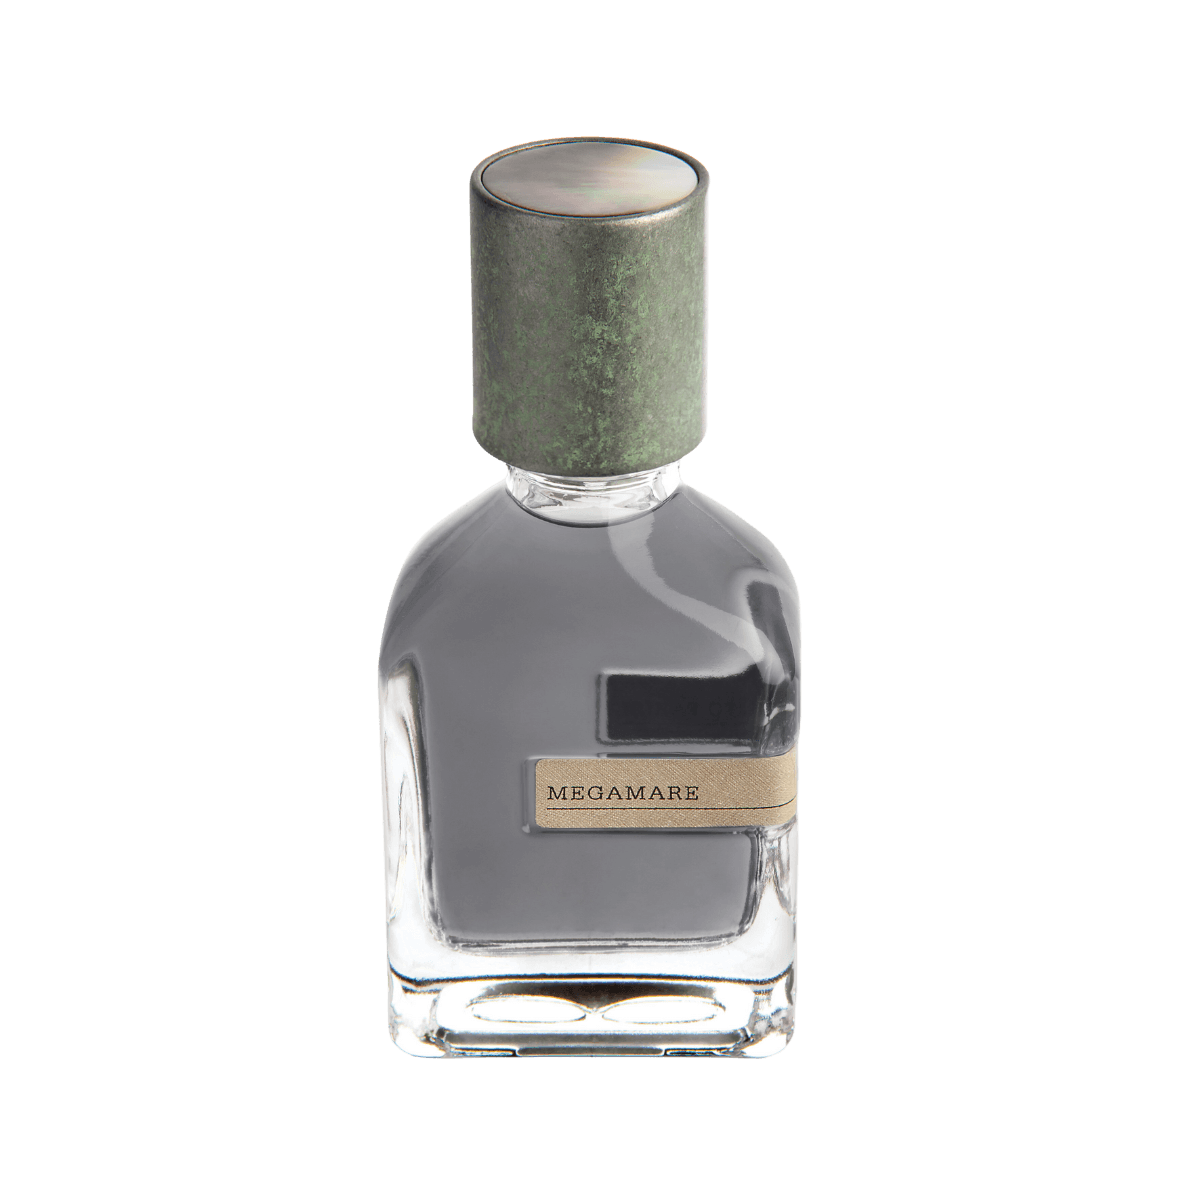 Afbeelding van Megamare extrait de parfum 50 ml van het parfummerk Orto Parisi